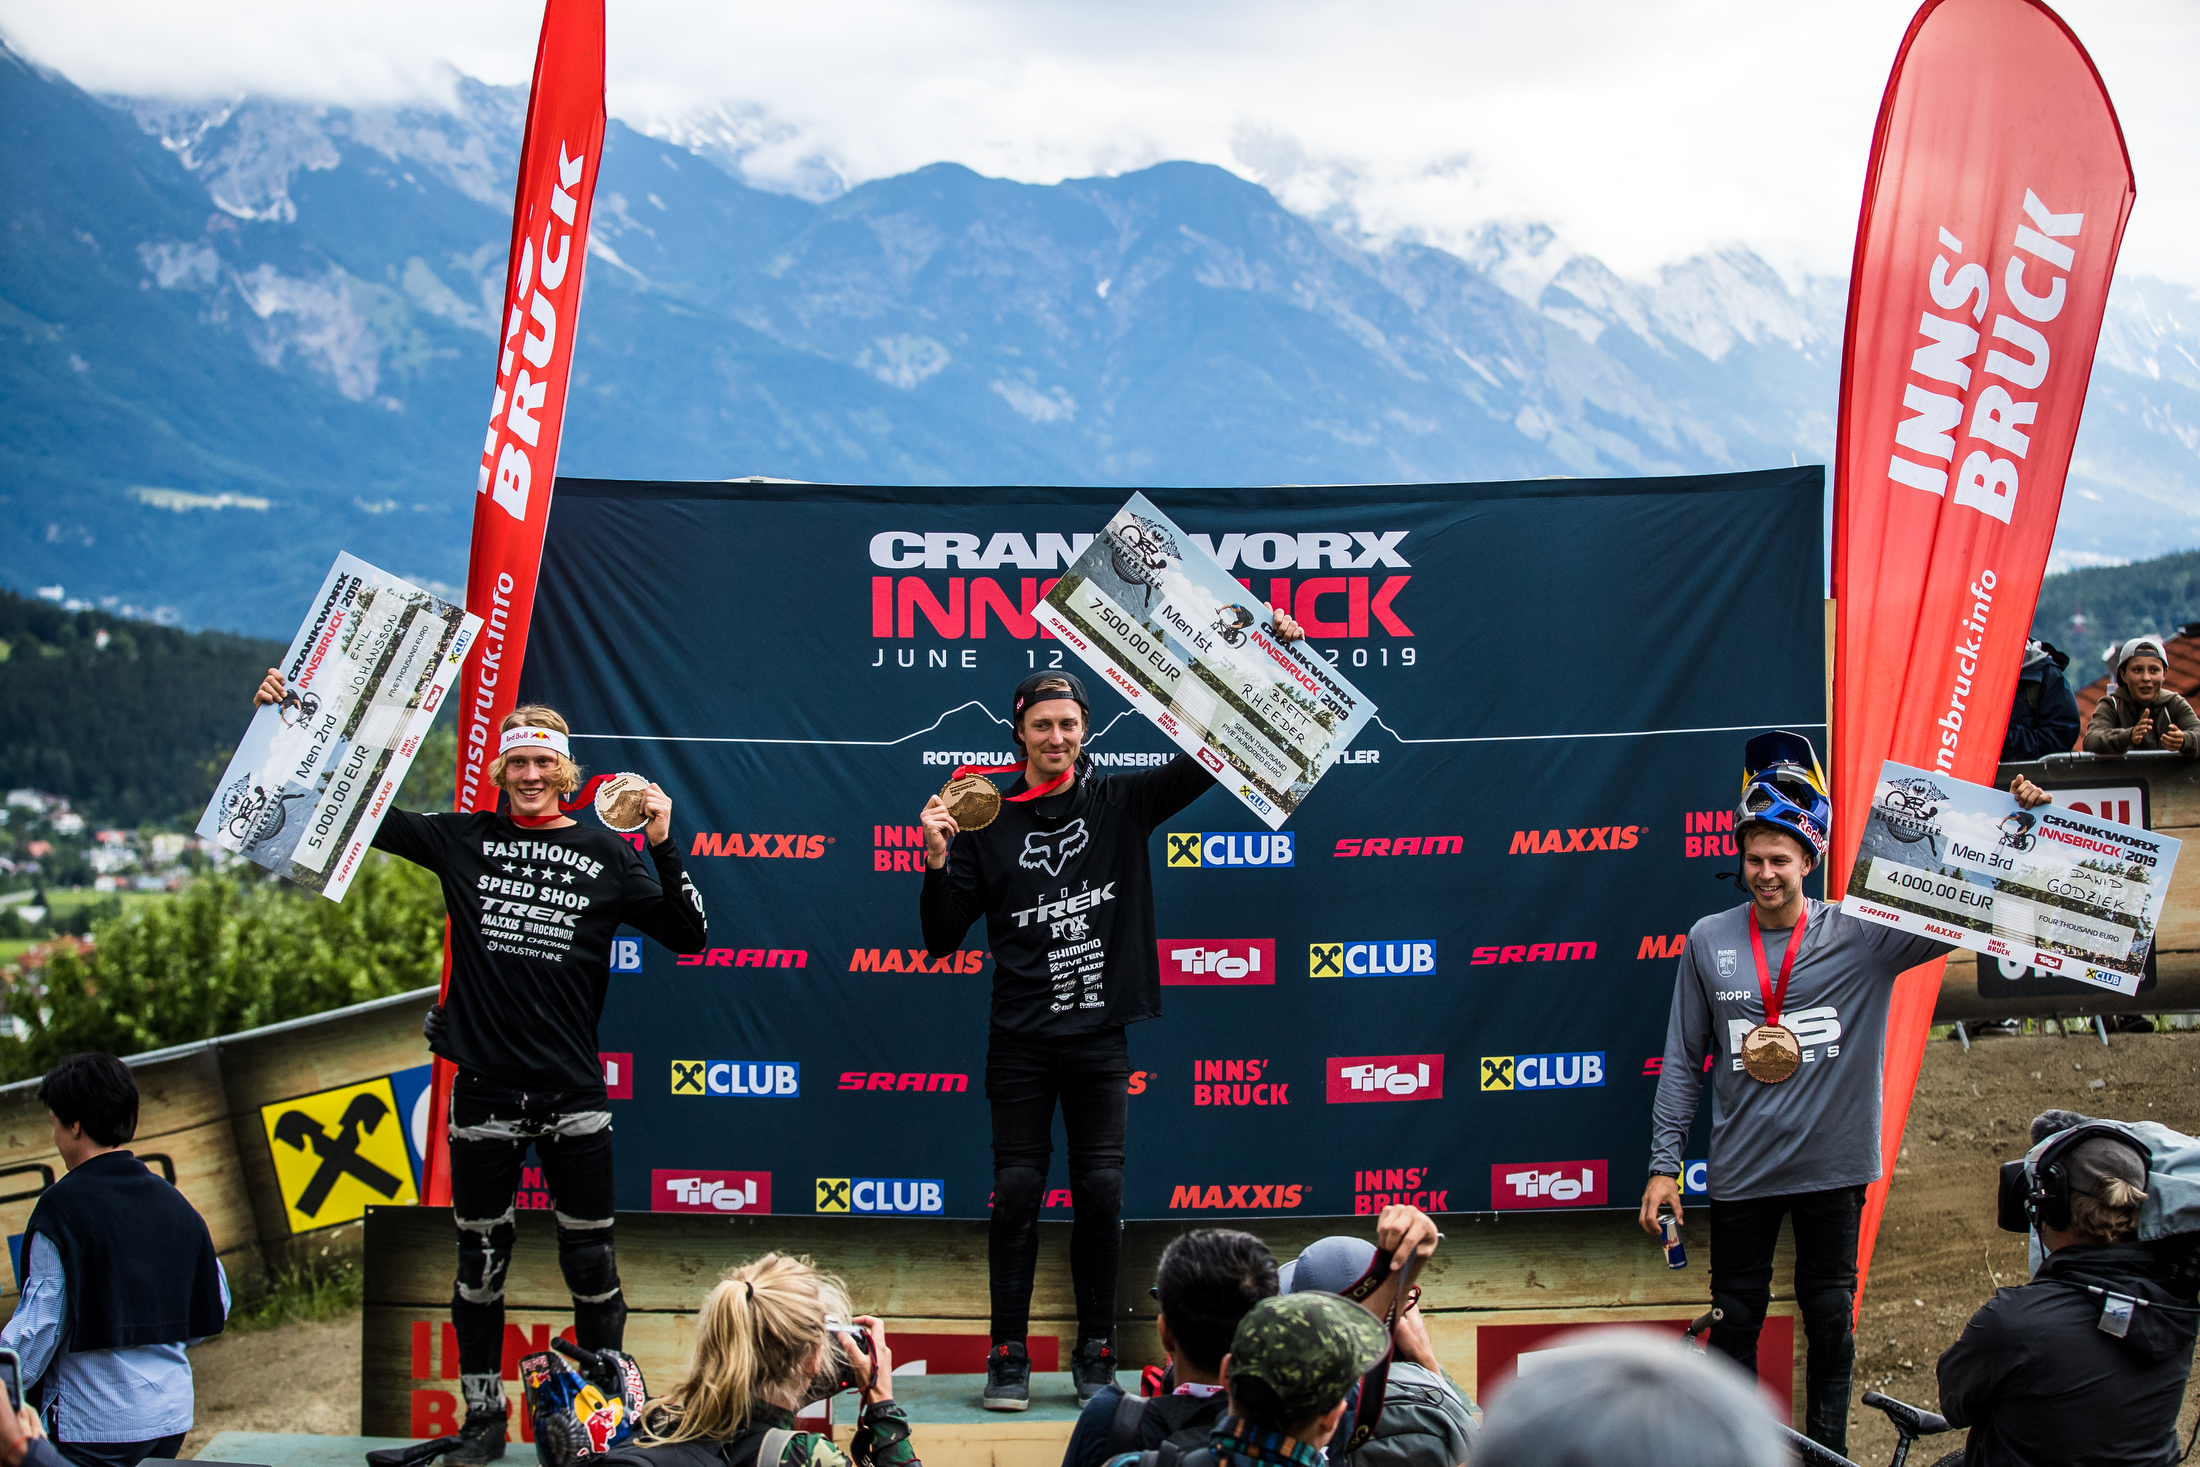 Brett Rheeder, Emil Johansson, and David Godziak make up the slopestyle podium. Crankworx Innsbruck 2019.